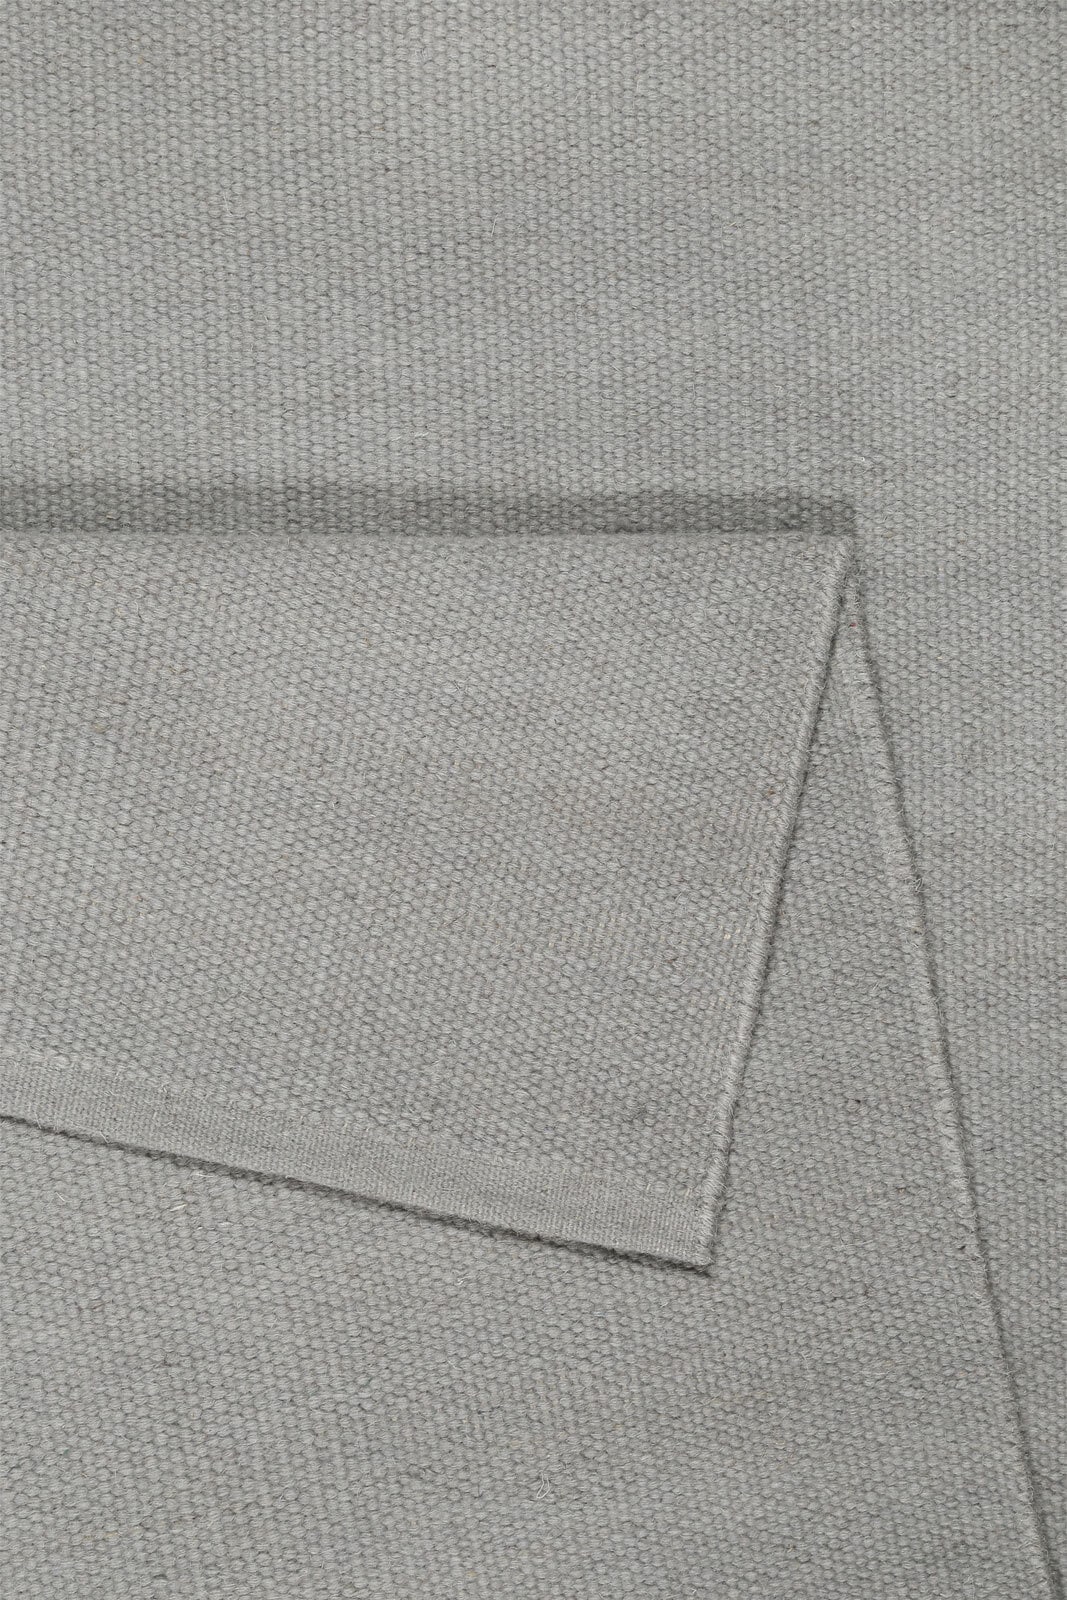 ESPRIT Kelim-Teppich MAYA 130 x 190 cm grau